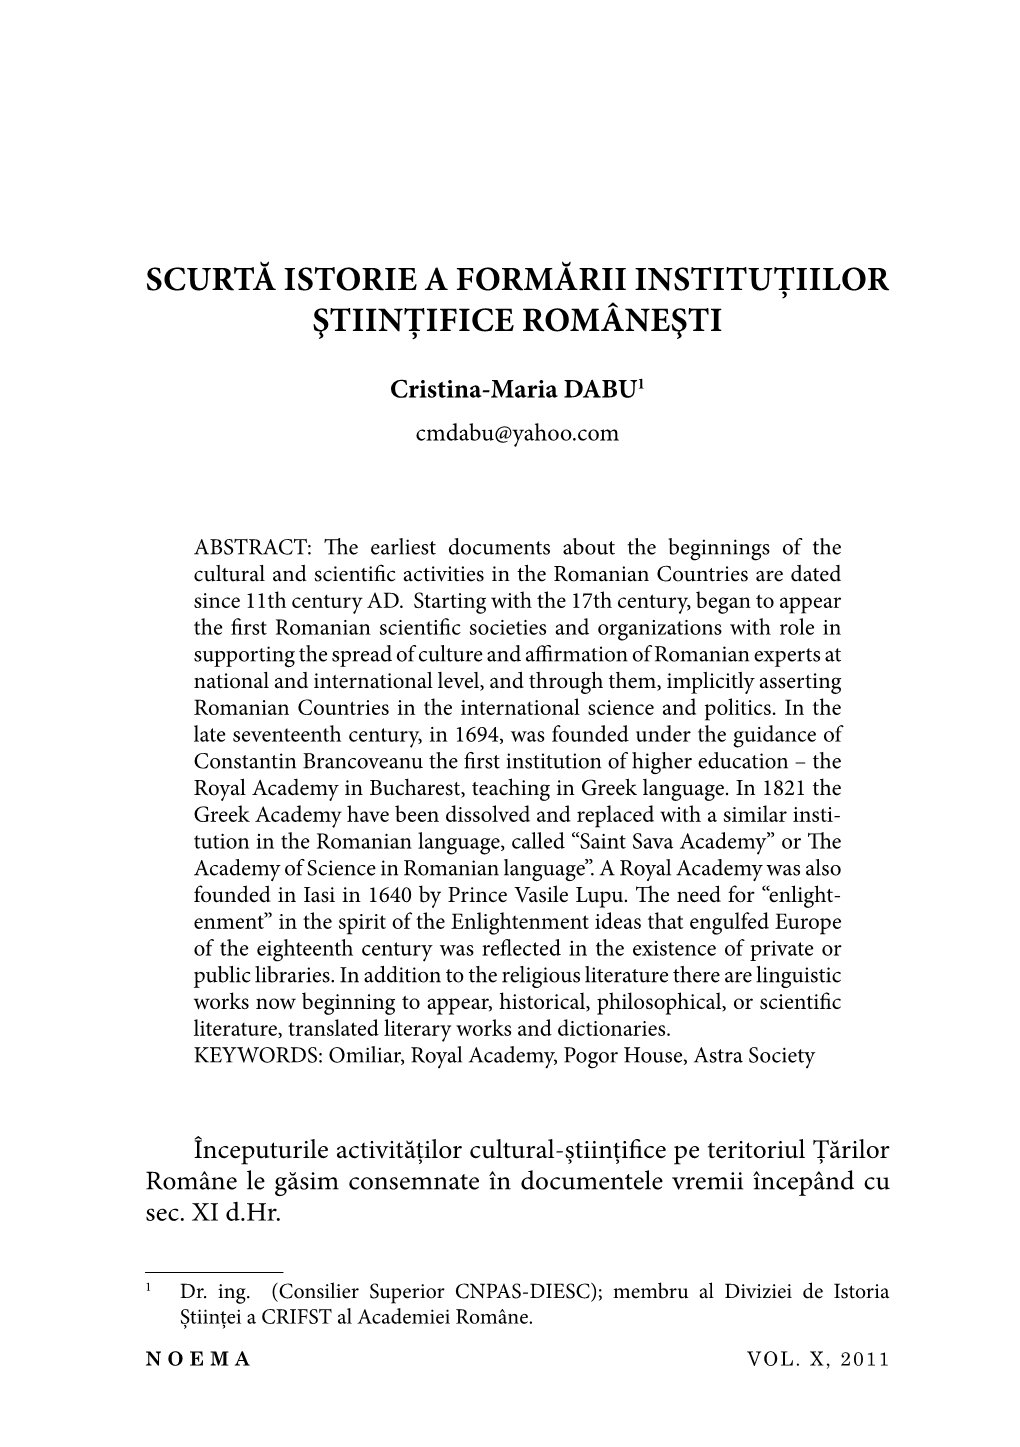 Scurtă Istorie a Formării Instituţiilor Ştiinţifi Ce Româneşti 459